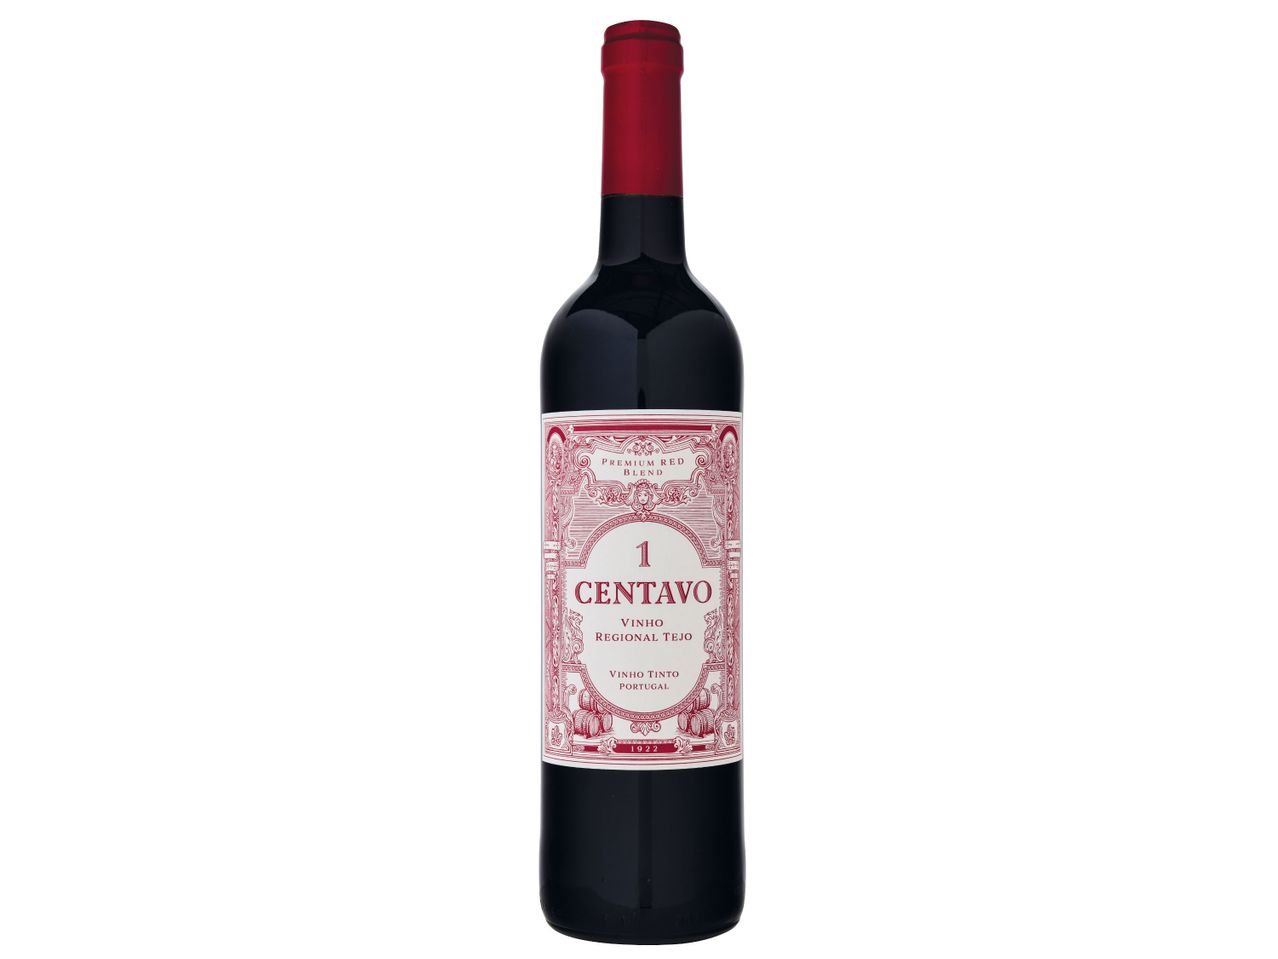 Ver empliada: 1 Centavo® Vinho Tinto Regional Tejo - Imagem 1